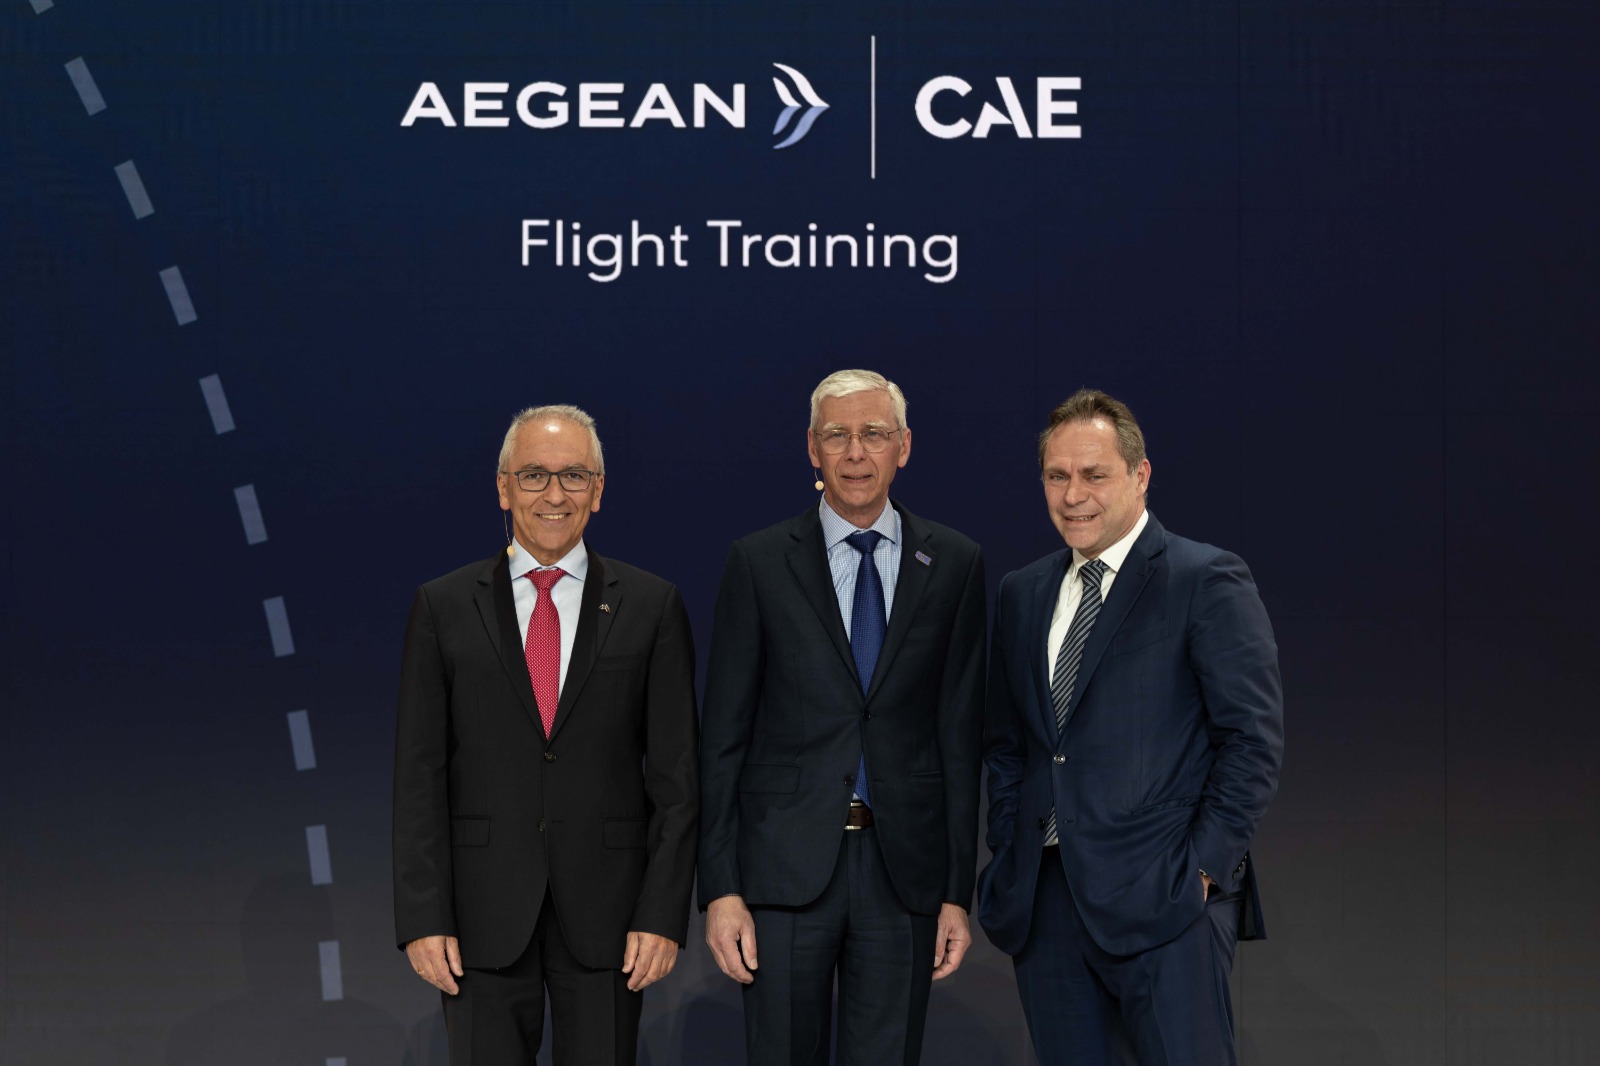 AEGEAN και CAE ενώνουν τις δυνάμεις τους και δημιουργούν το πρώτο σύγχρονο Κέντρο Προσομοιωτών Πτήσεων και Εκπαίδευσης Πληρωμάτων στην Ελλάδα